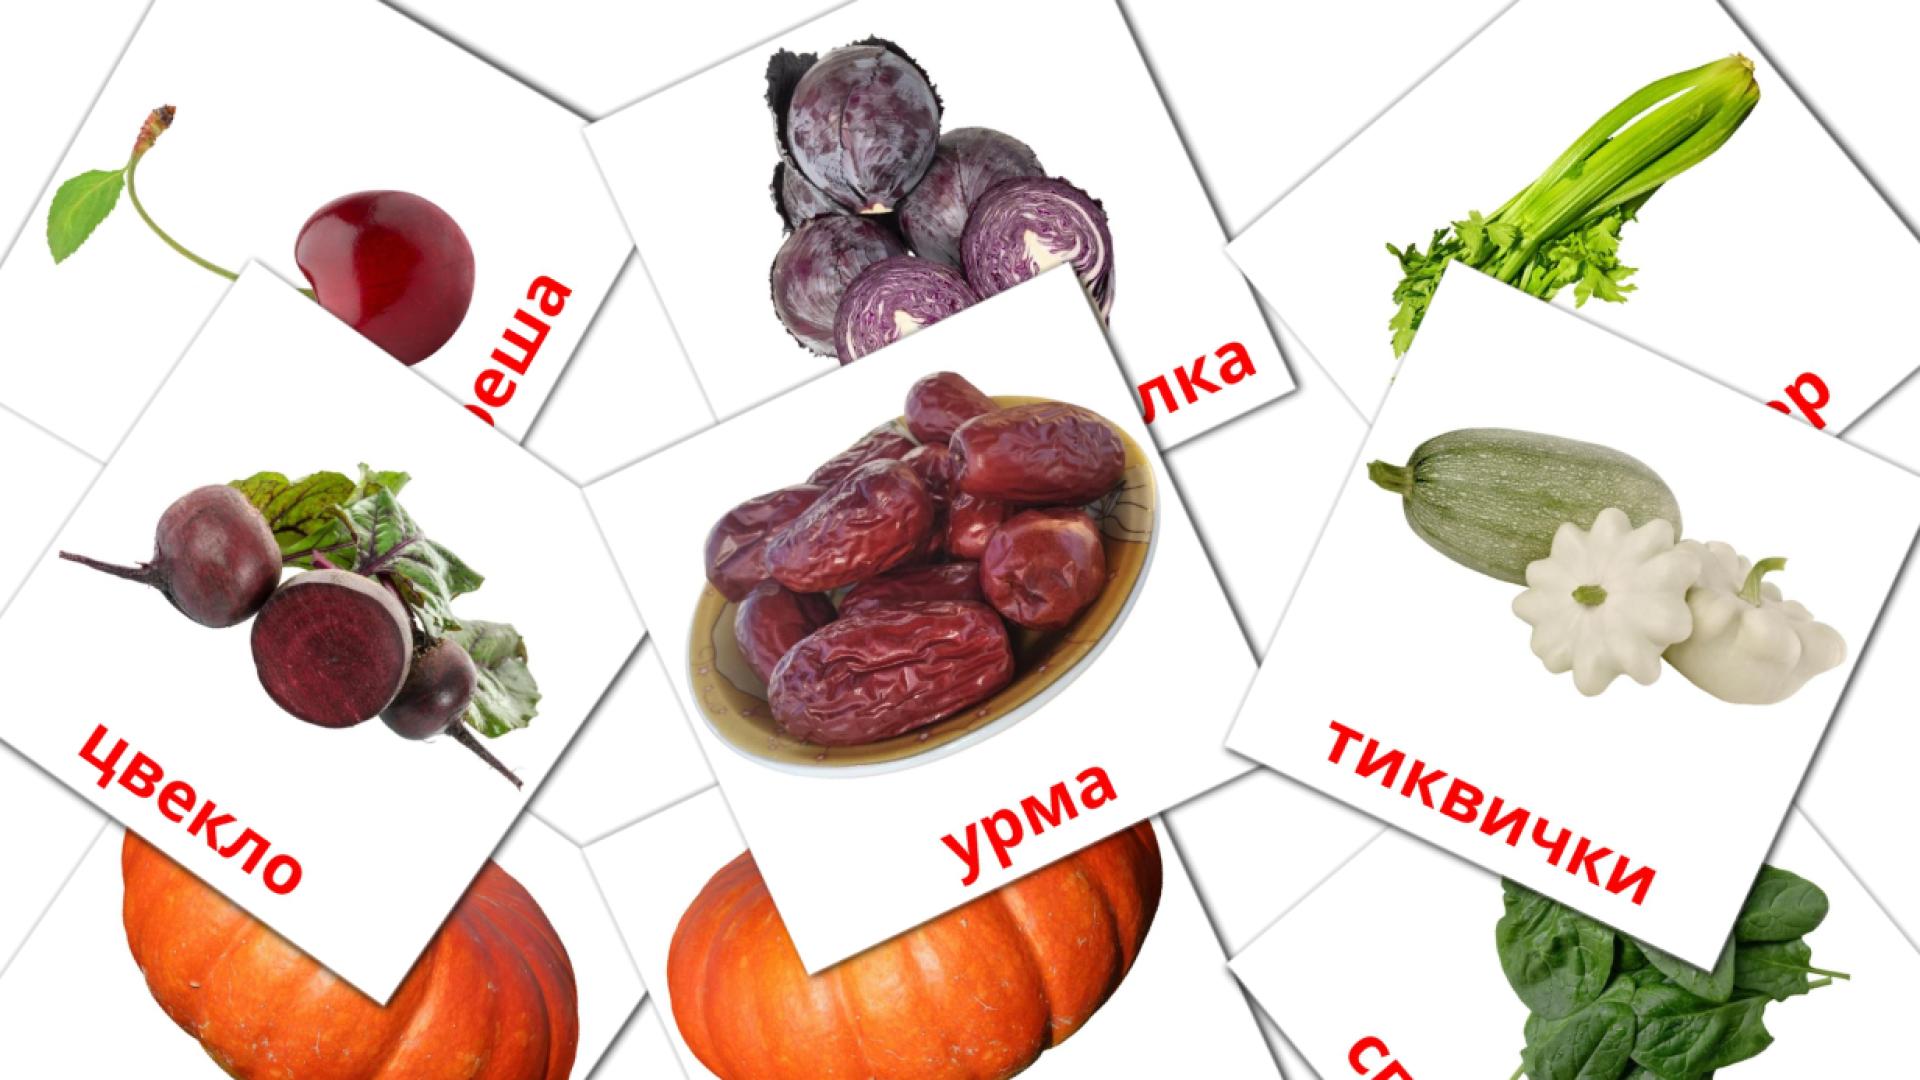 macedonio tarjetas de vocabulario en Храна